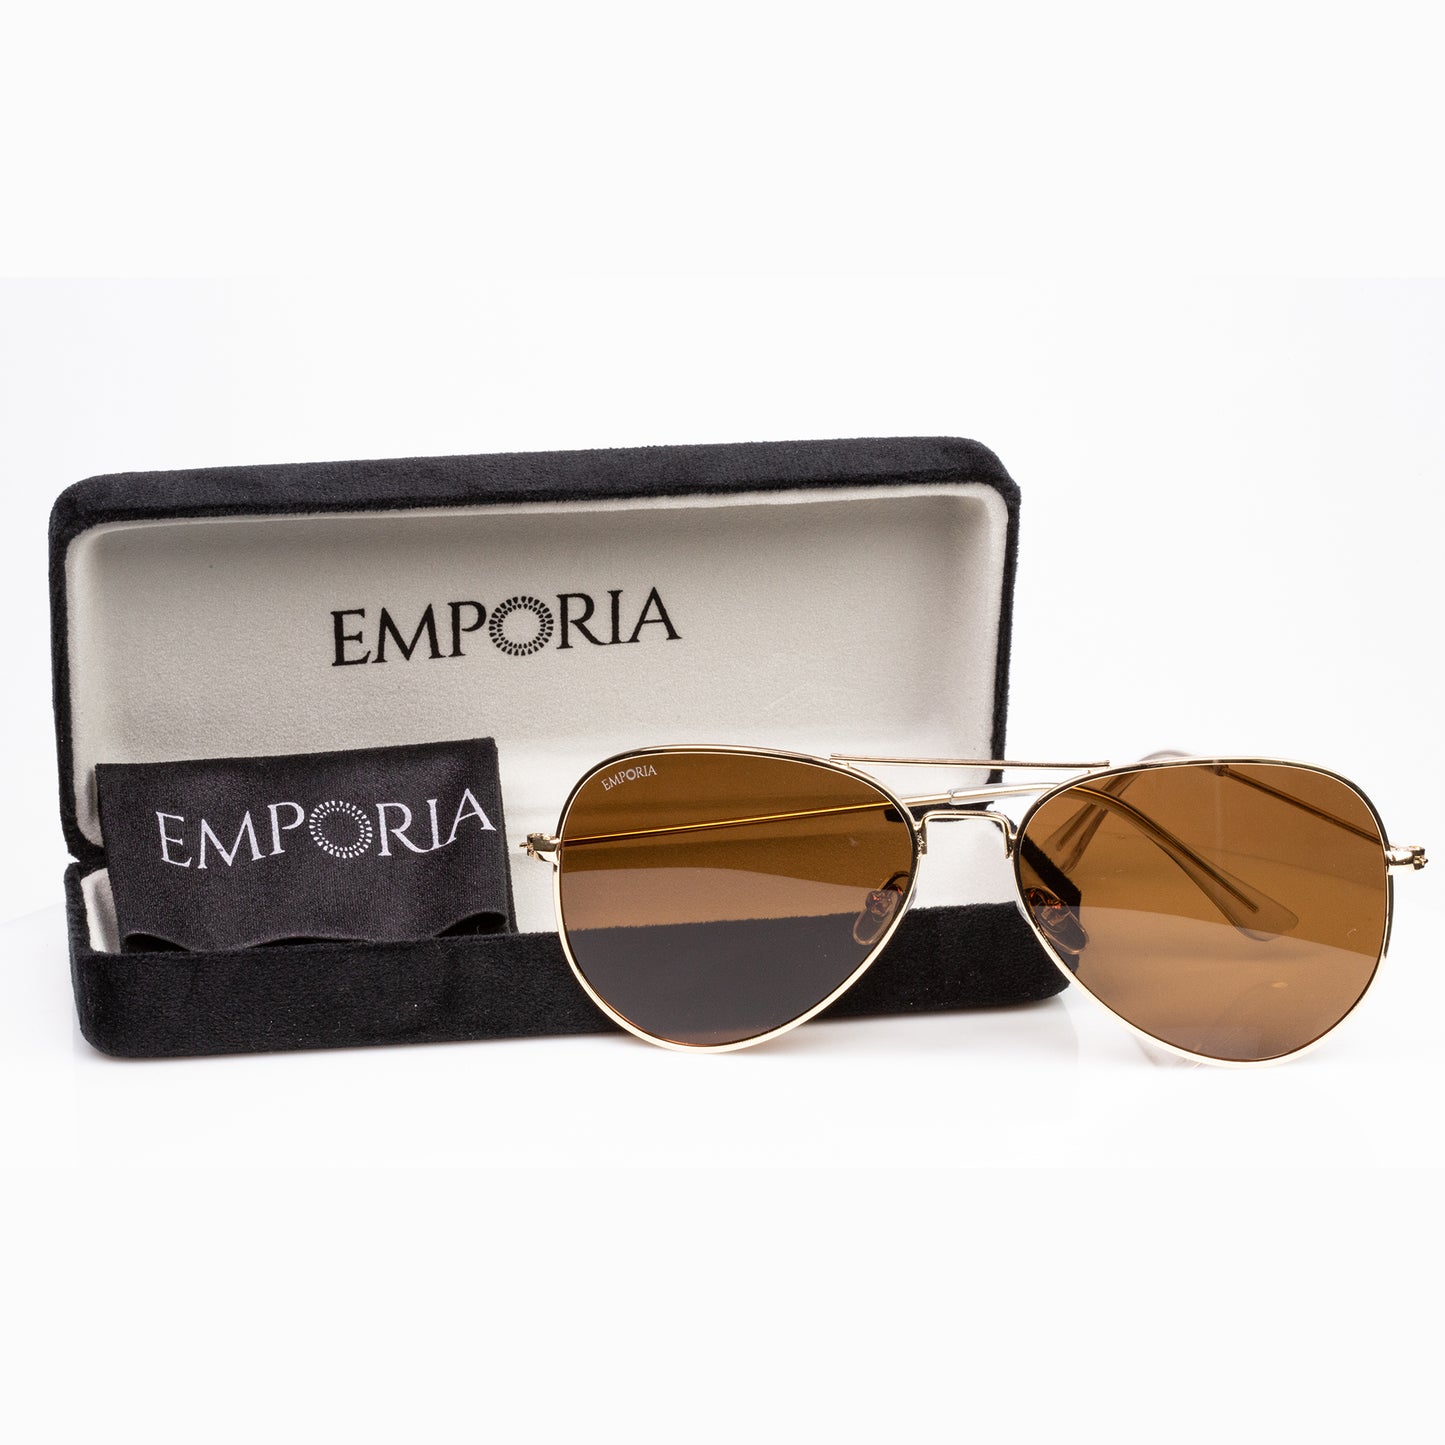 Emporia Italy - Okulary przeciwsłoneczne Aviator "PUSTYNIA", polaryzacyjne okulary przeciwsłoneczne z twardym etui i ściereczką do czyszczenia, jasnobrązowe soczewki, złota oprawka